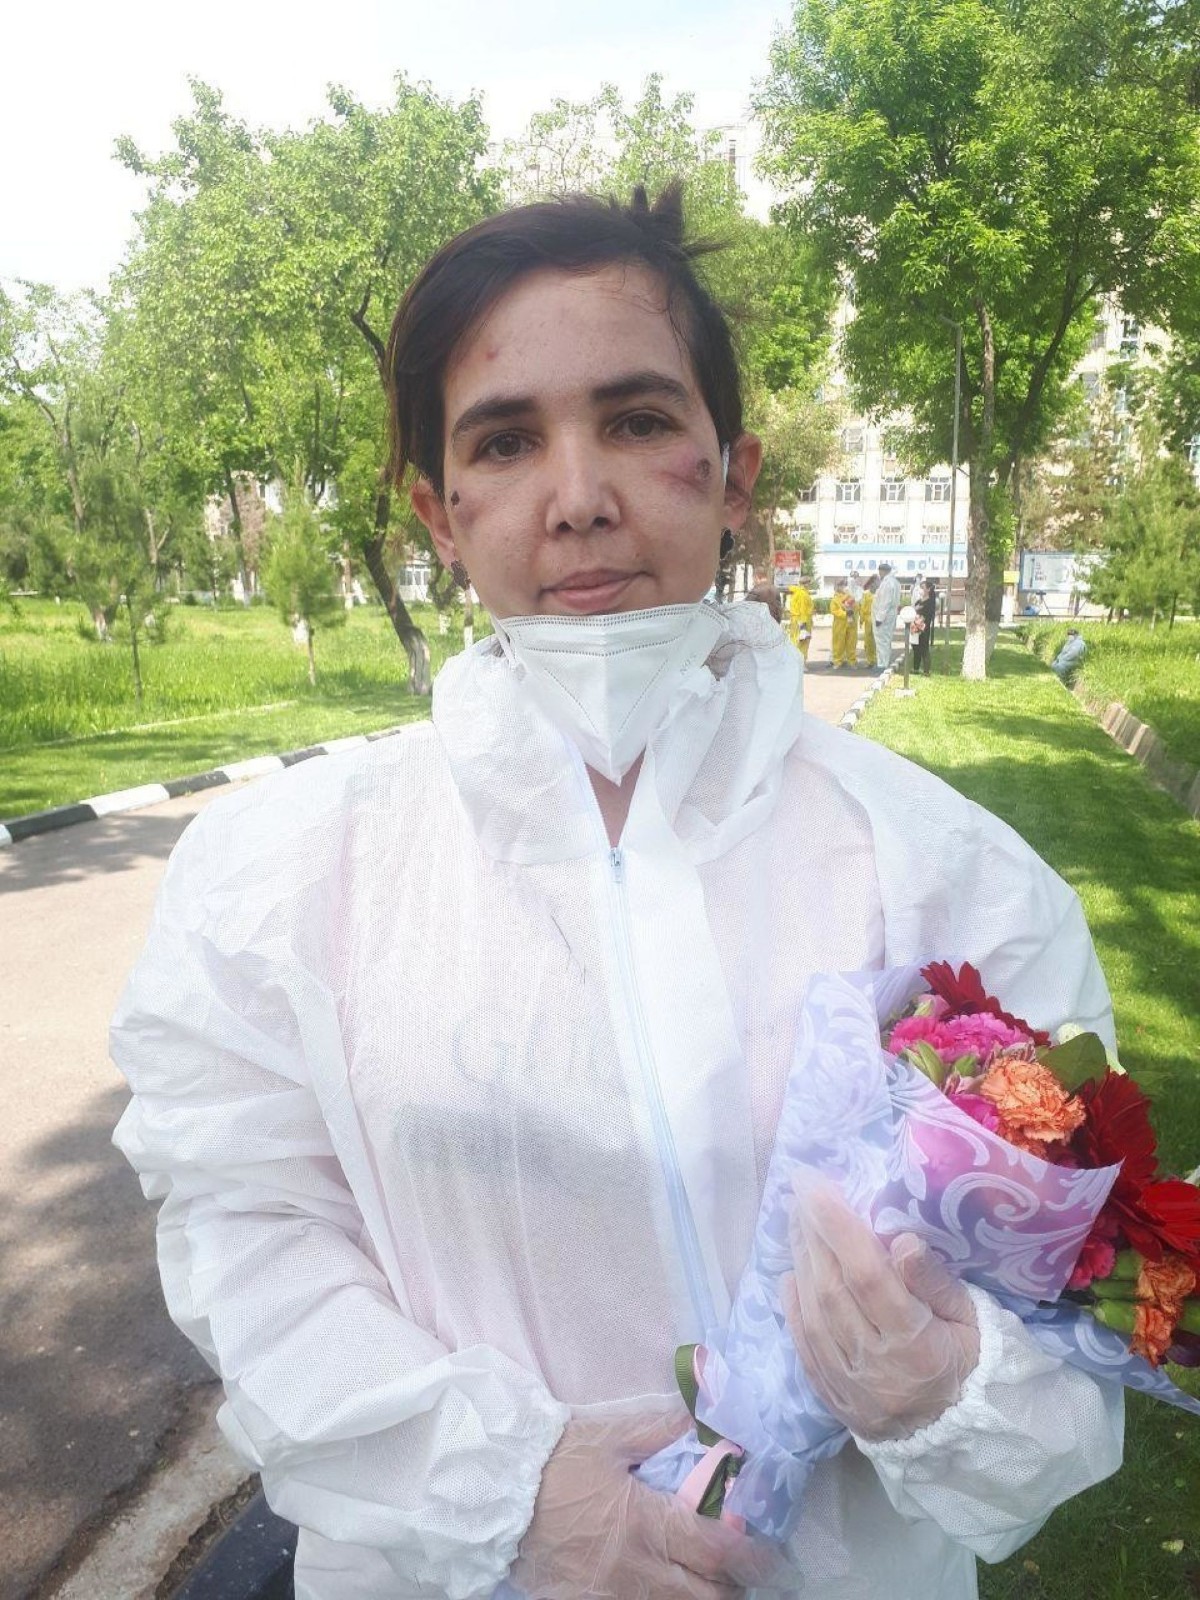 【наши соседи】 Минздрав Узбекистана опубликовал фото медсестры, работавшей с больными коронавирусом